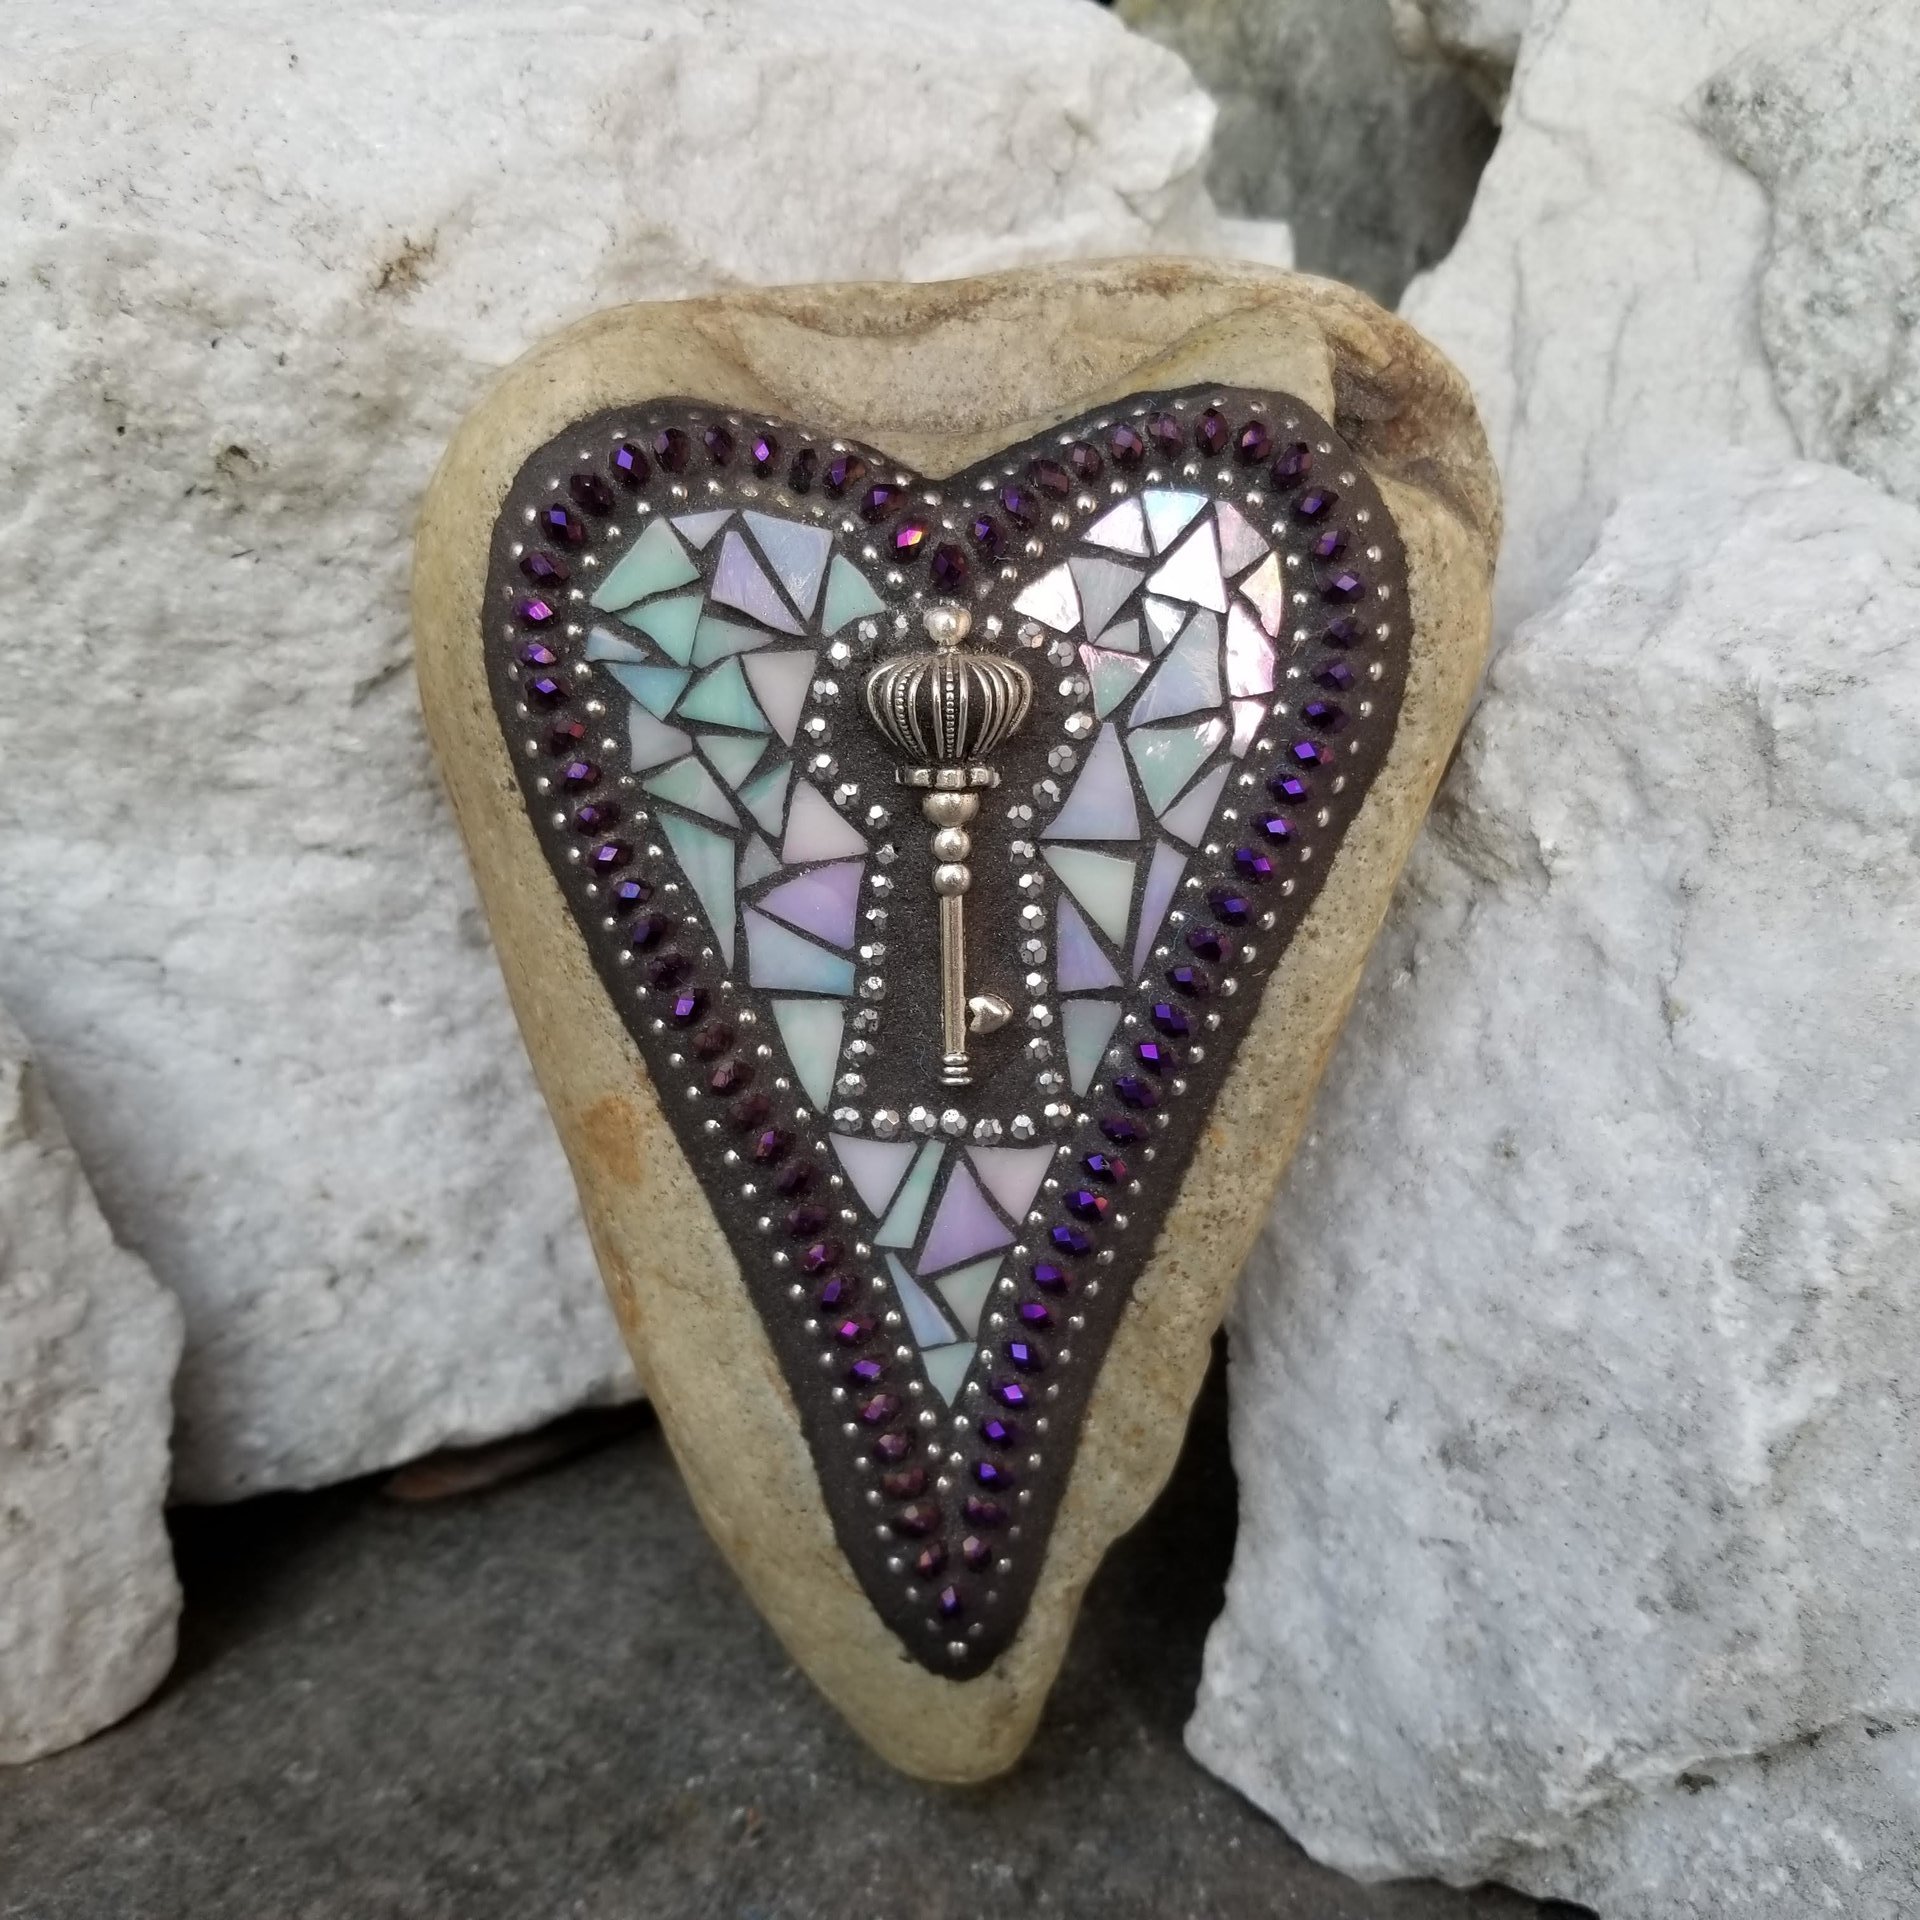 Key Heart, Mosaic, Garden Stone,  Gardener Gift, Home Decor, Garden Decor